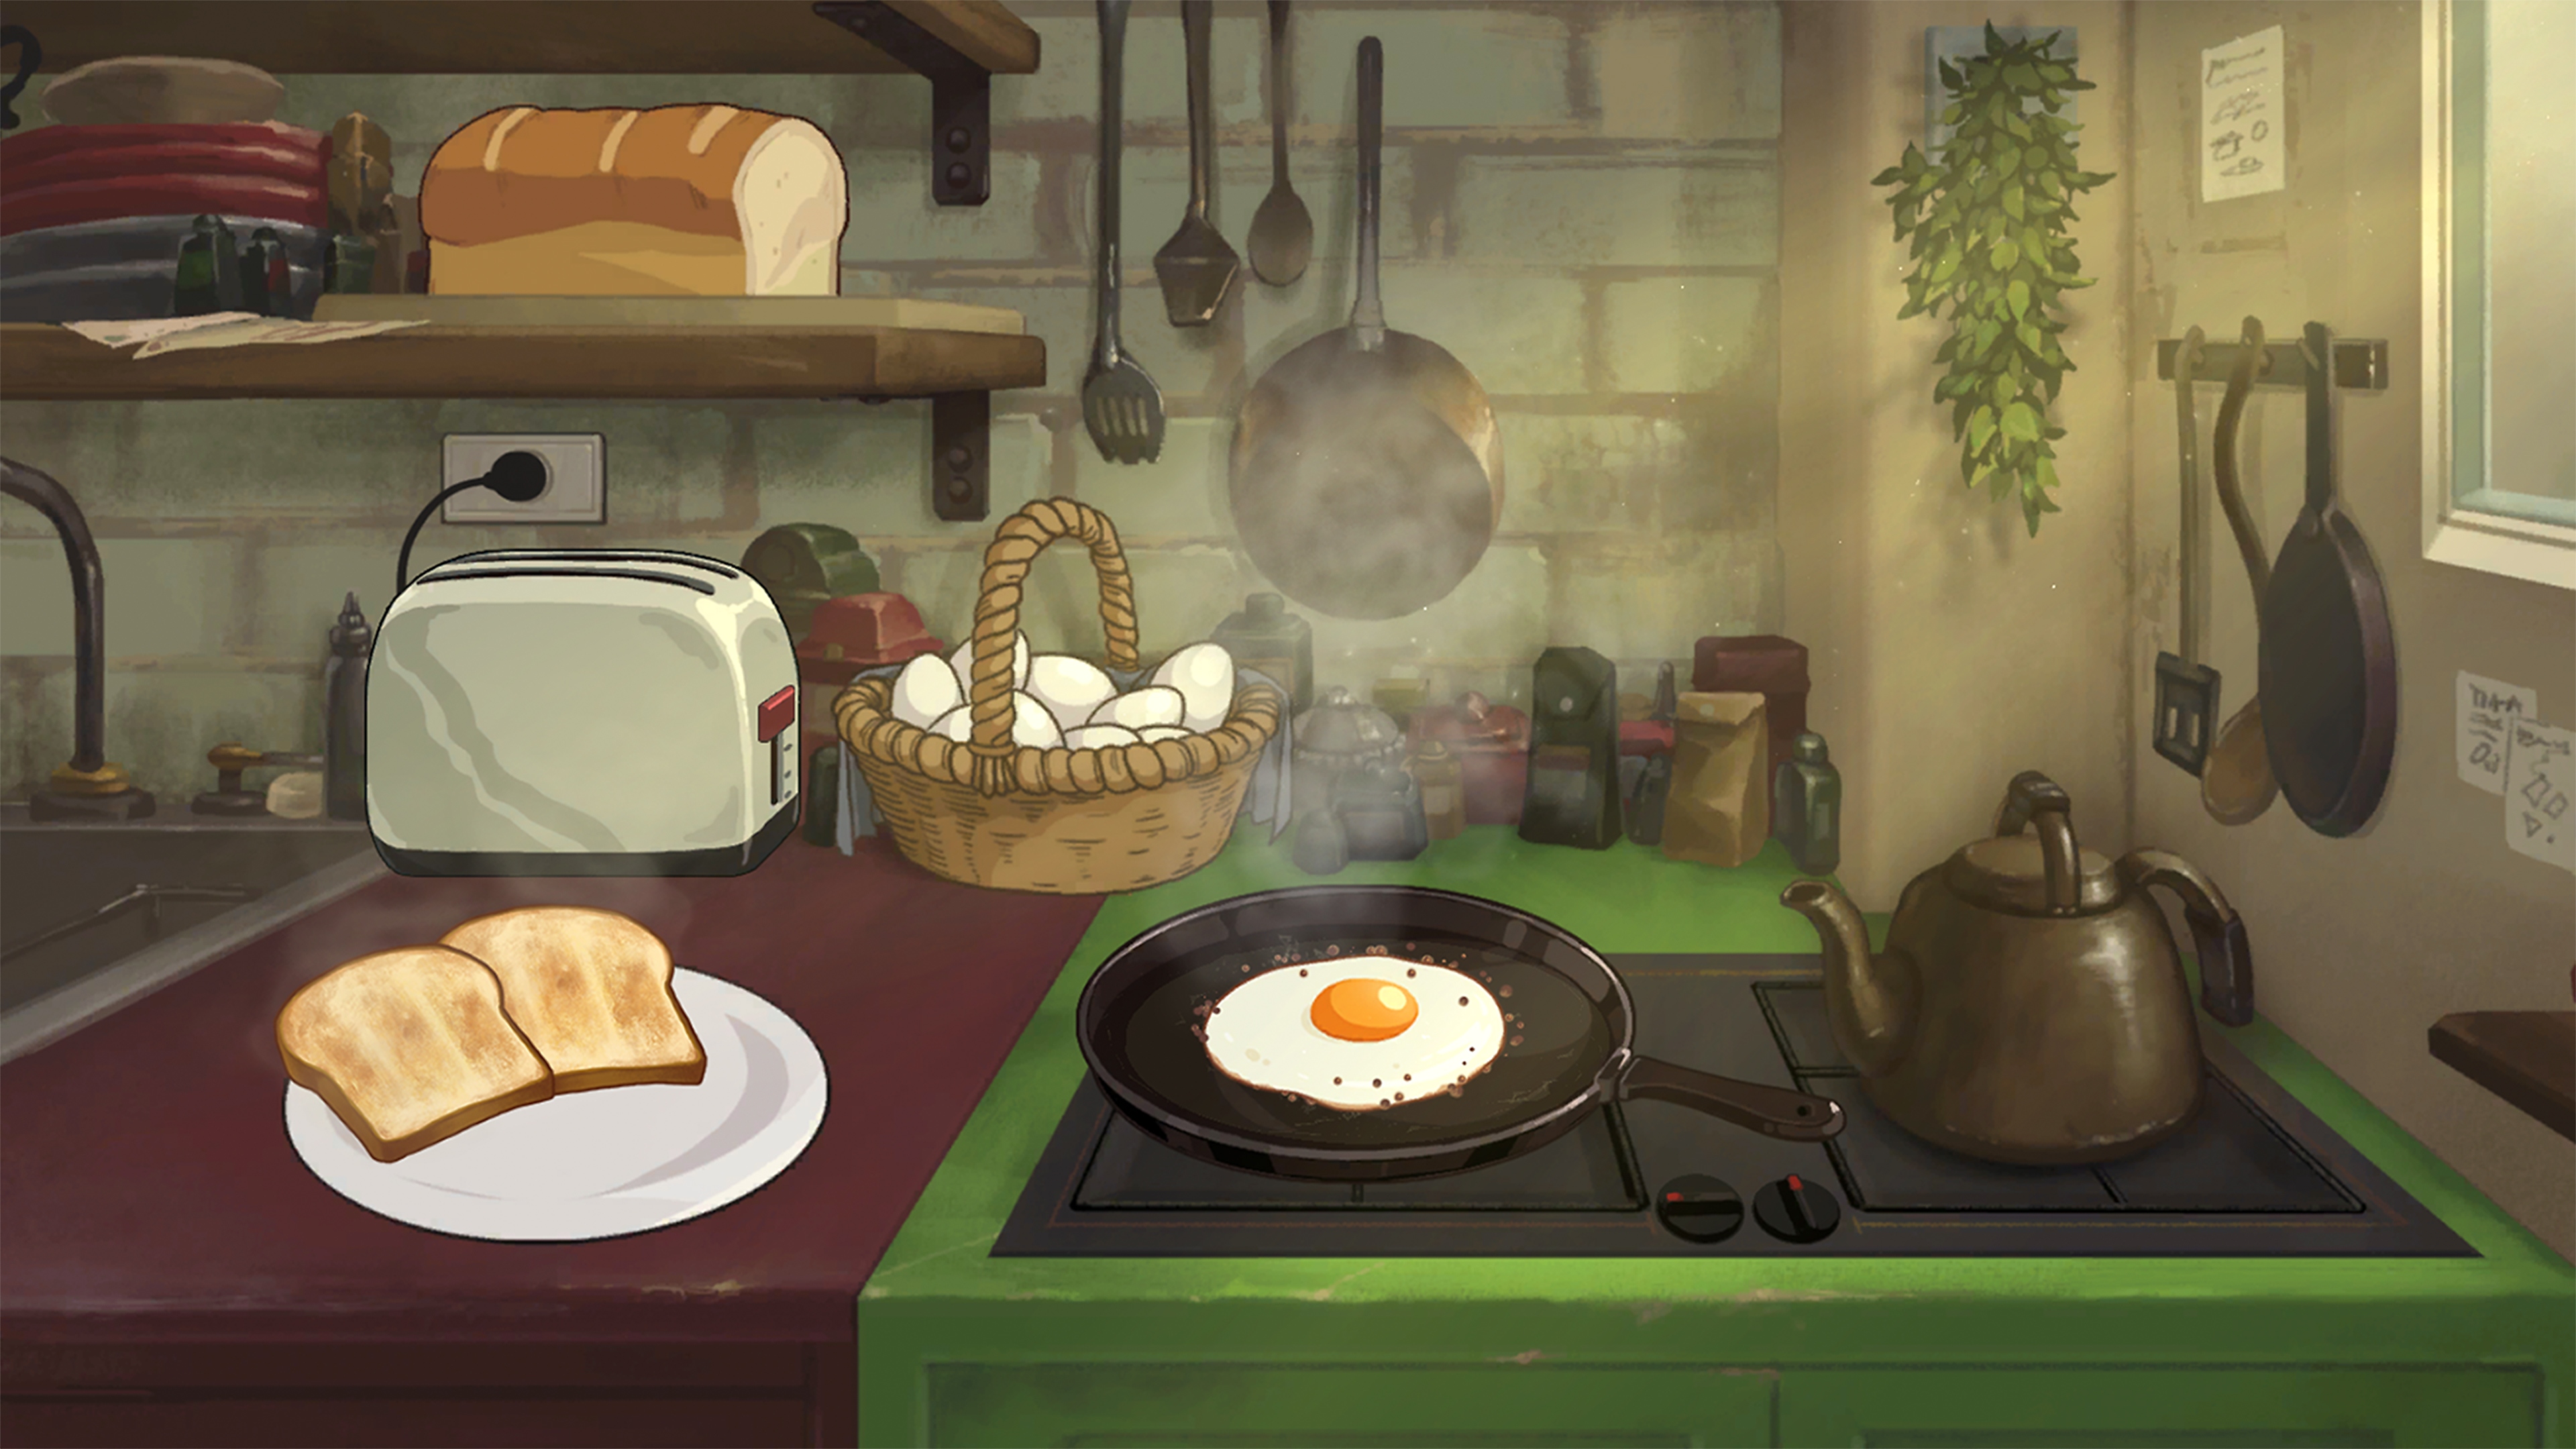 Behind the Frame: The Finest Scenery - skærmbillede, som viser morgenmad, der tilberedes på et komfur